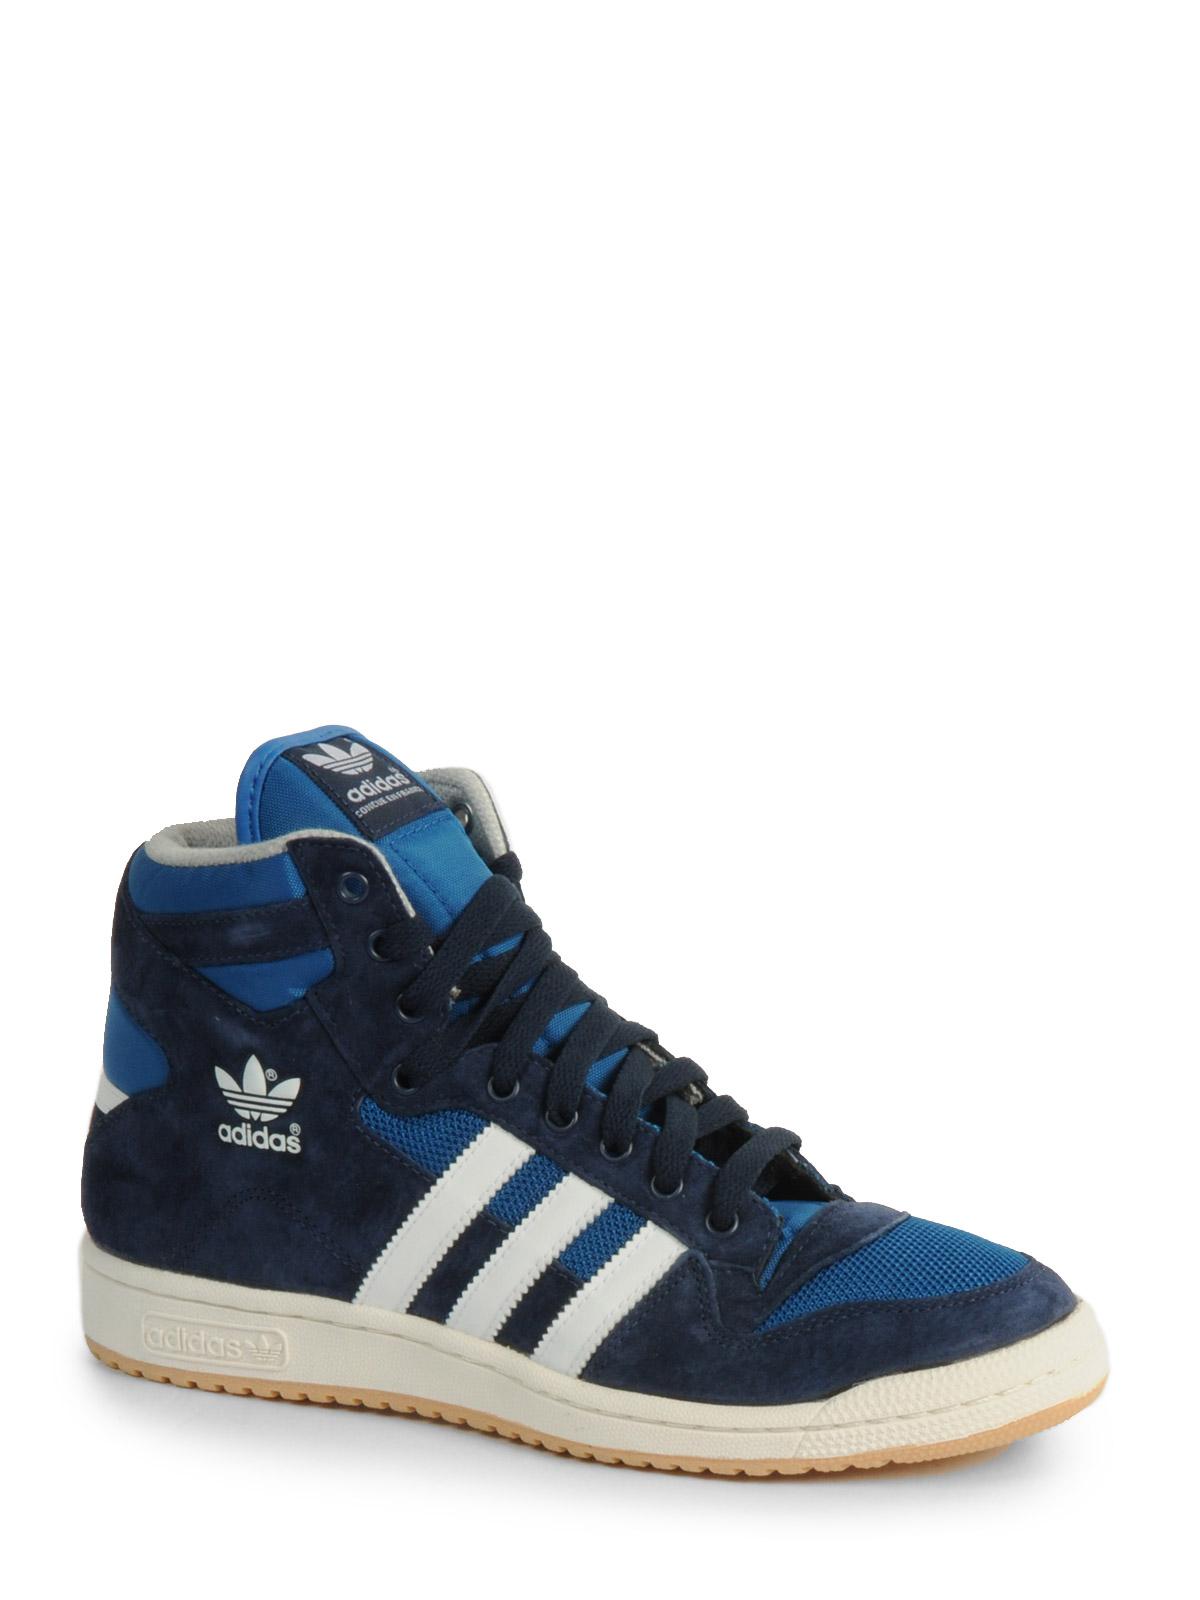 Foto Adidas Decade OG Mid zapatillas azul real/blanco/ blanco vap EU: 43